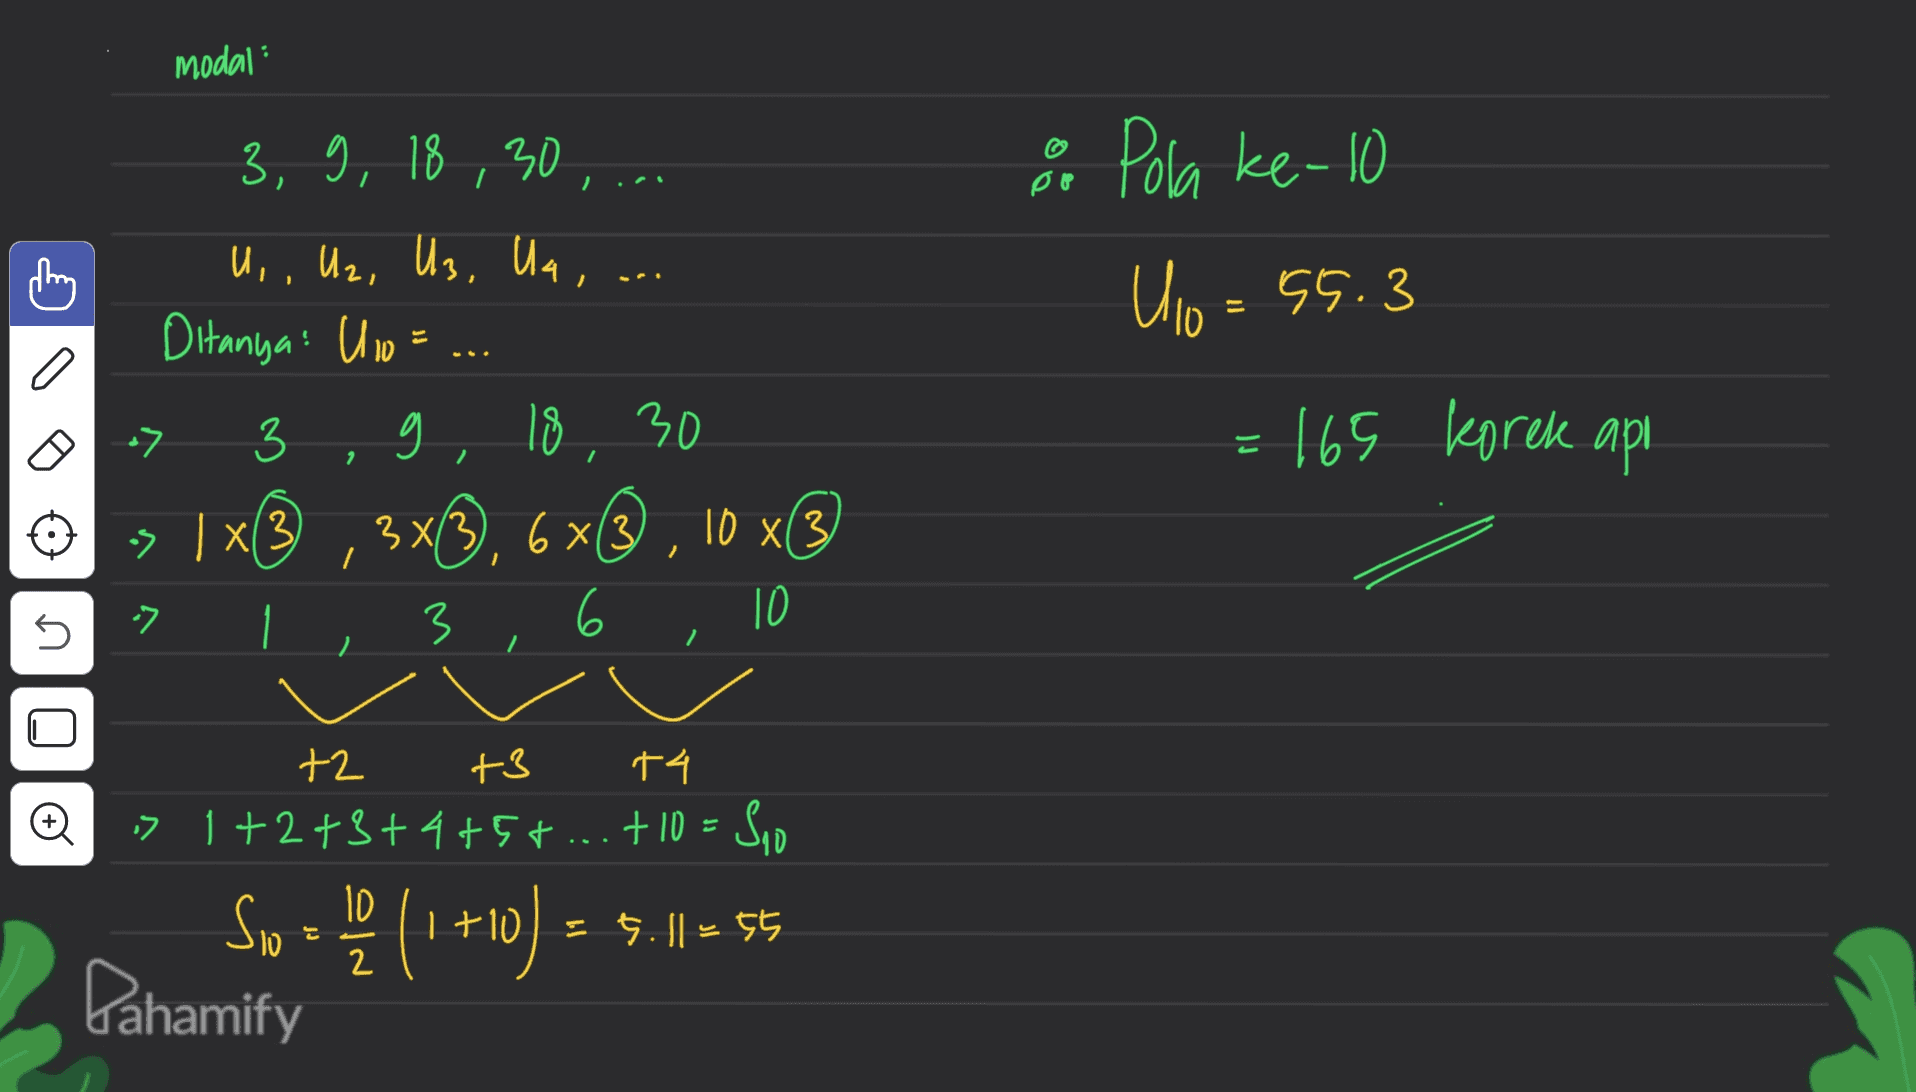 modal : po O Pola ke-10 U10 = 55.3 Ulo 3, 9, 18,30 , ... U,, U2, U3, Ua , Ditanya: U 10 = 3 9 18 30 3x133 3*3), 6x® , 10 x® 3 6 10 = 165 korek api 2 > > , x13 I I n 2 مه +2 +3 +4 => 1+2+3+4+5+ ... + 10 = Sio 10 = 55 Pahamify So = (1 +10) = 5.11 = 5 는 | 2 